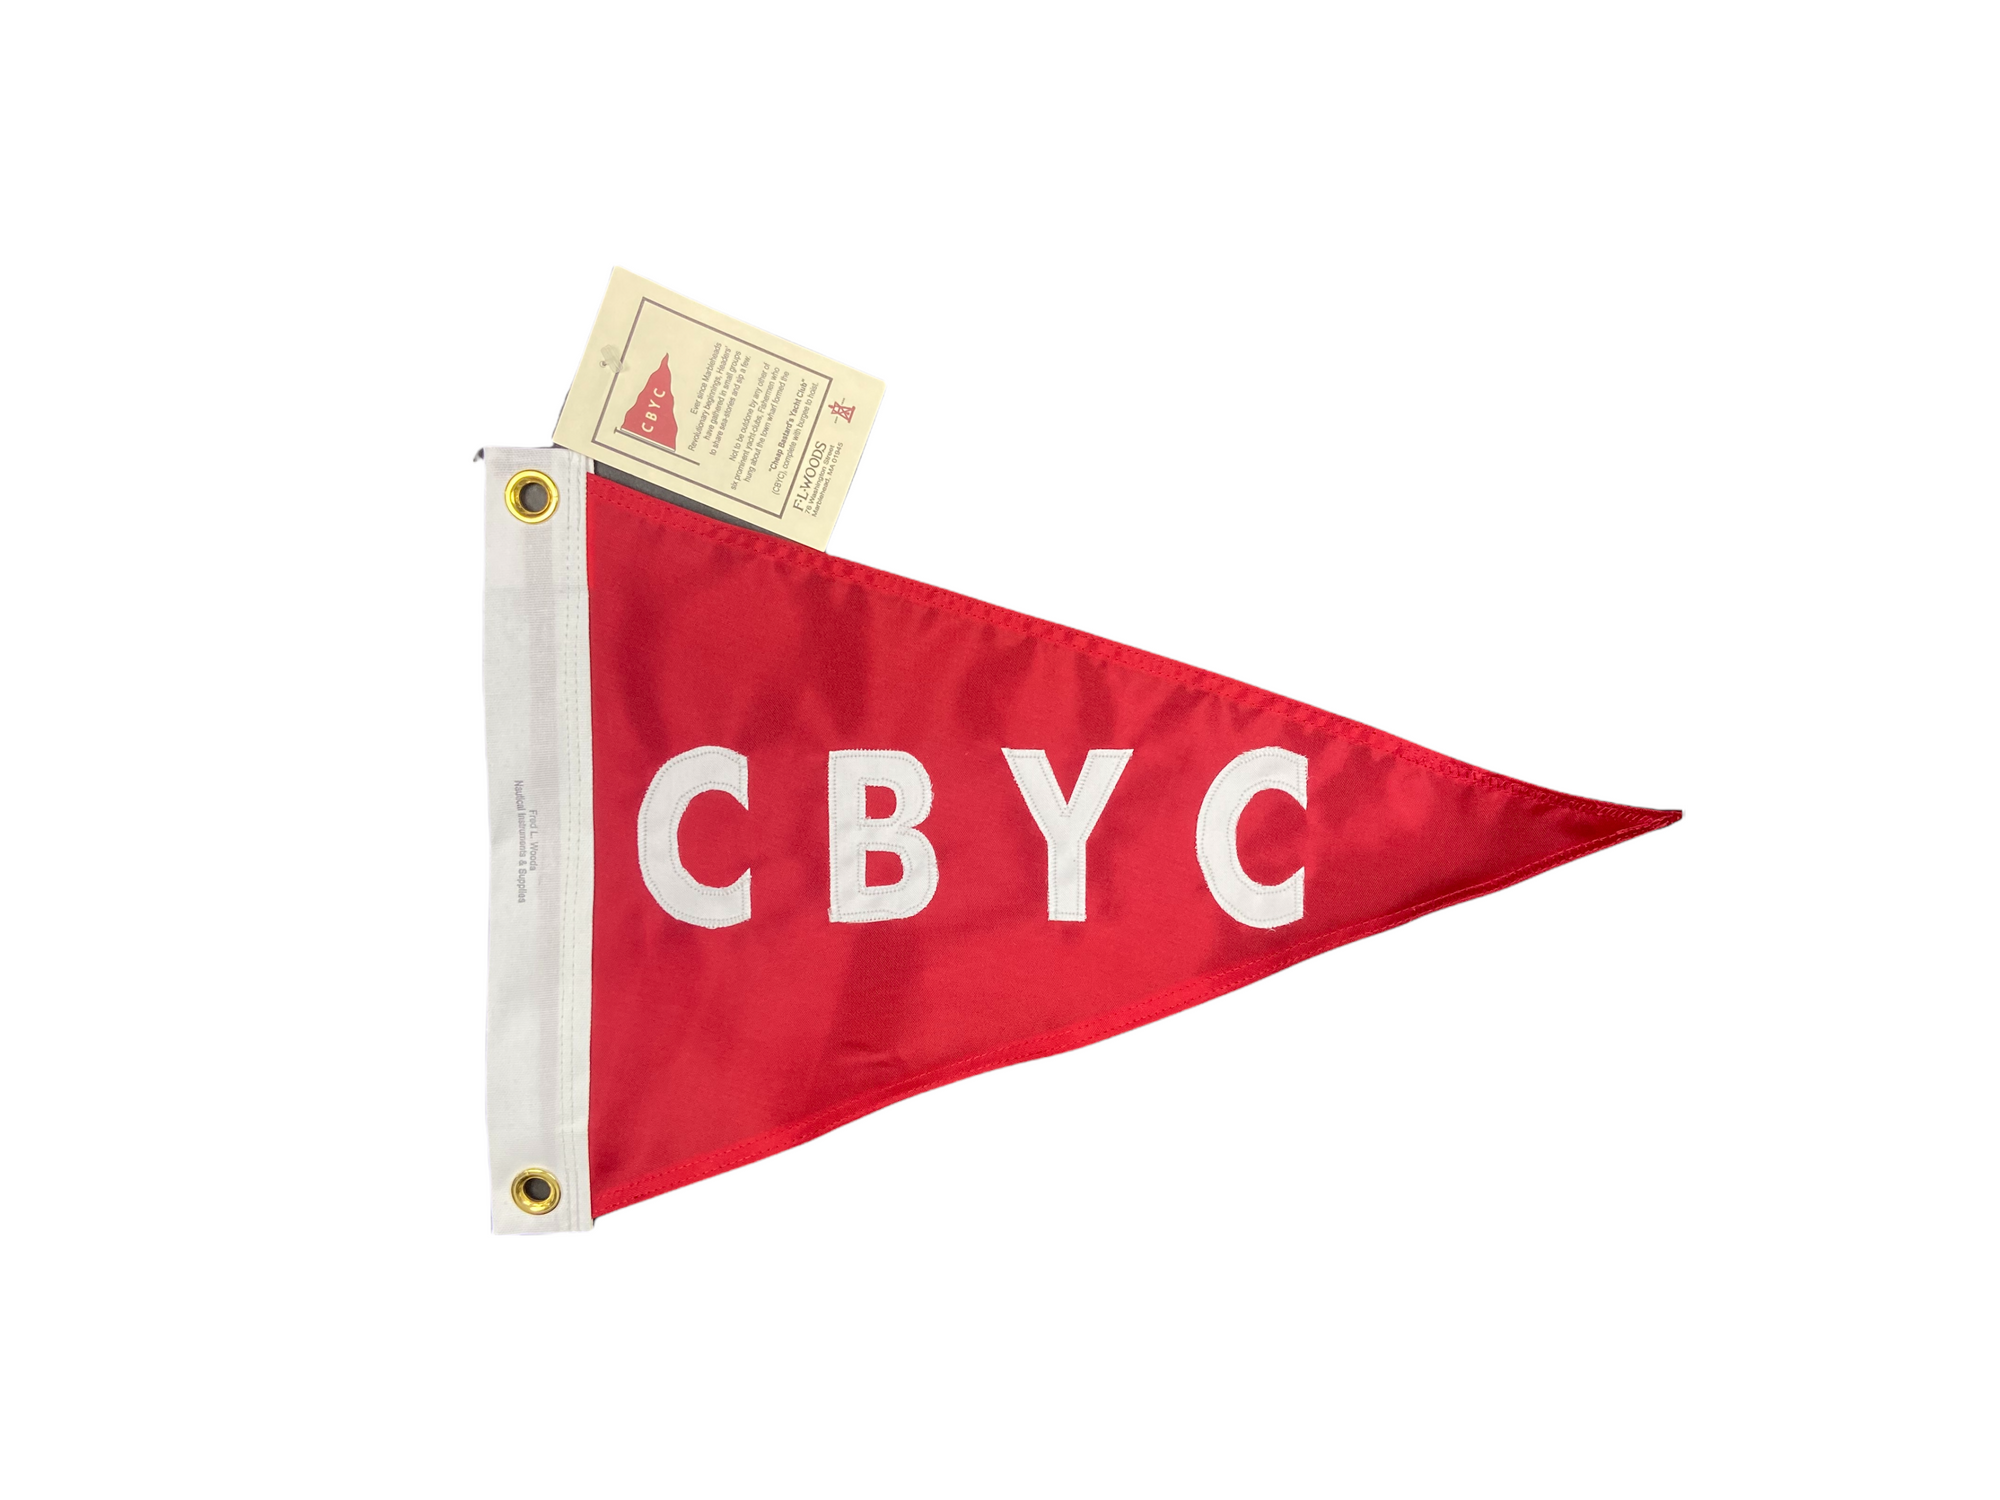 CBYC Burgee